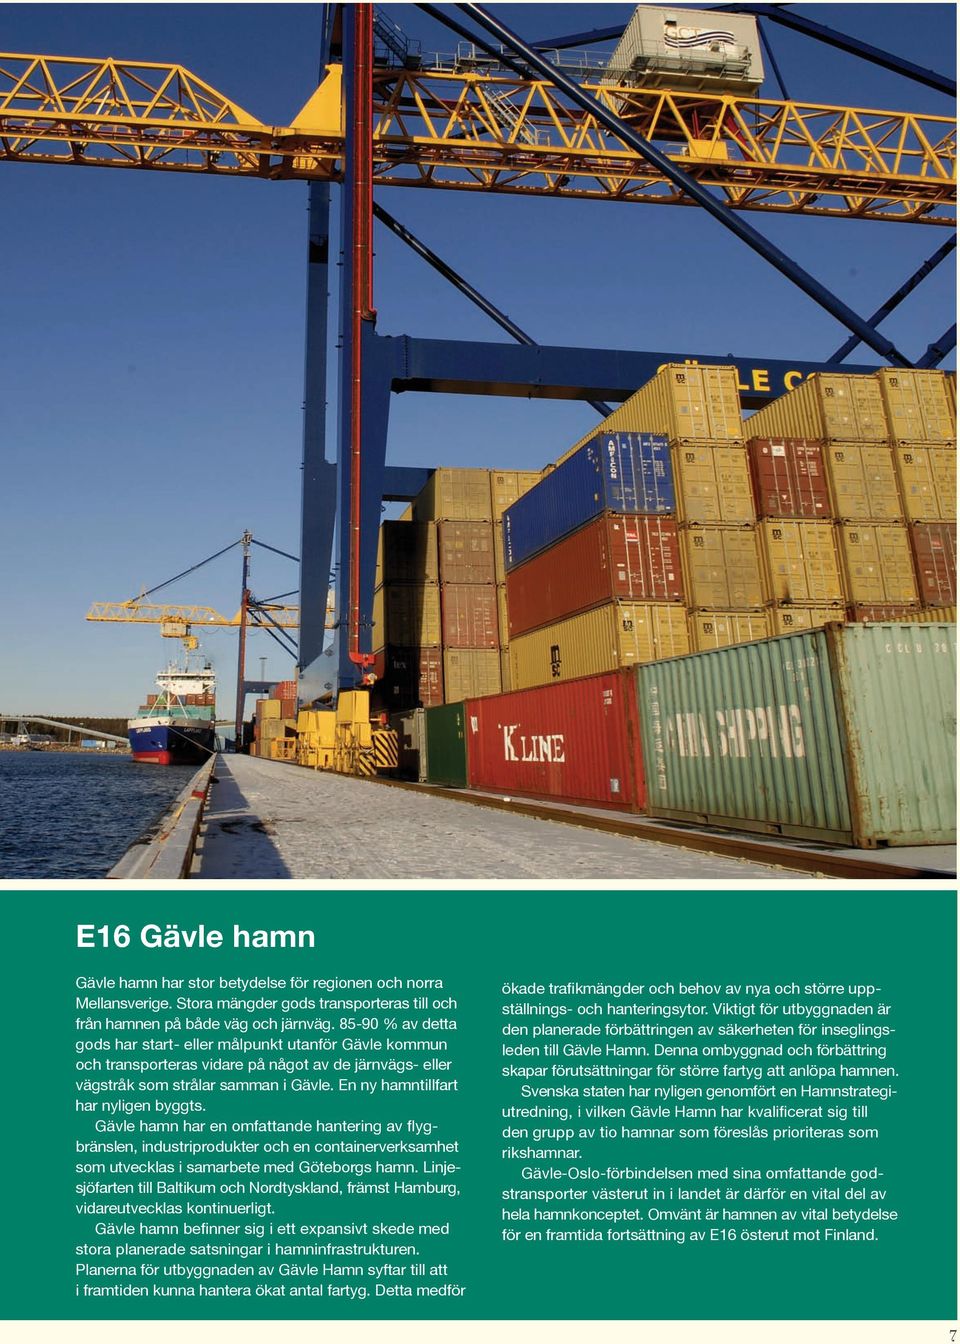 Gävle hamn har en omfattande hantering av flygbränslen, industriprodukter och en containerverksamhet som utvecklas i samarbete med Göteborgs hamn.